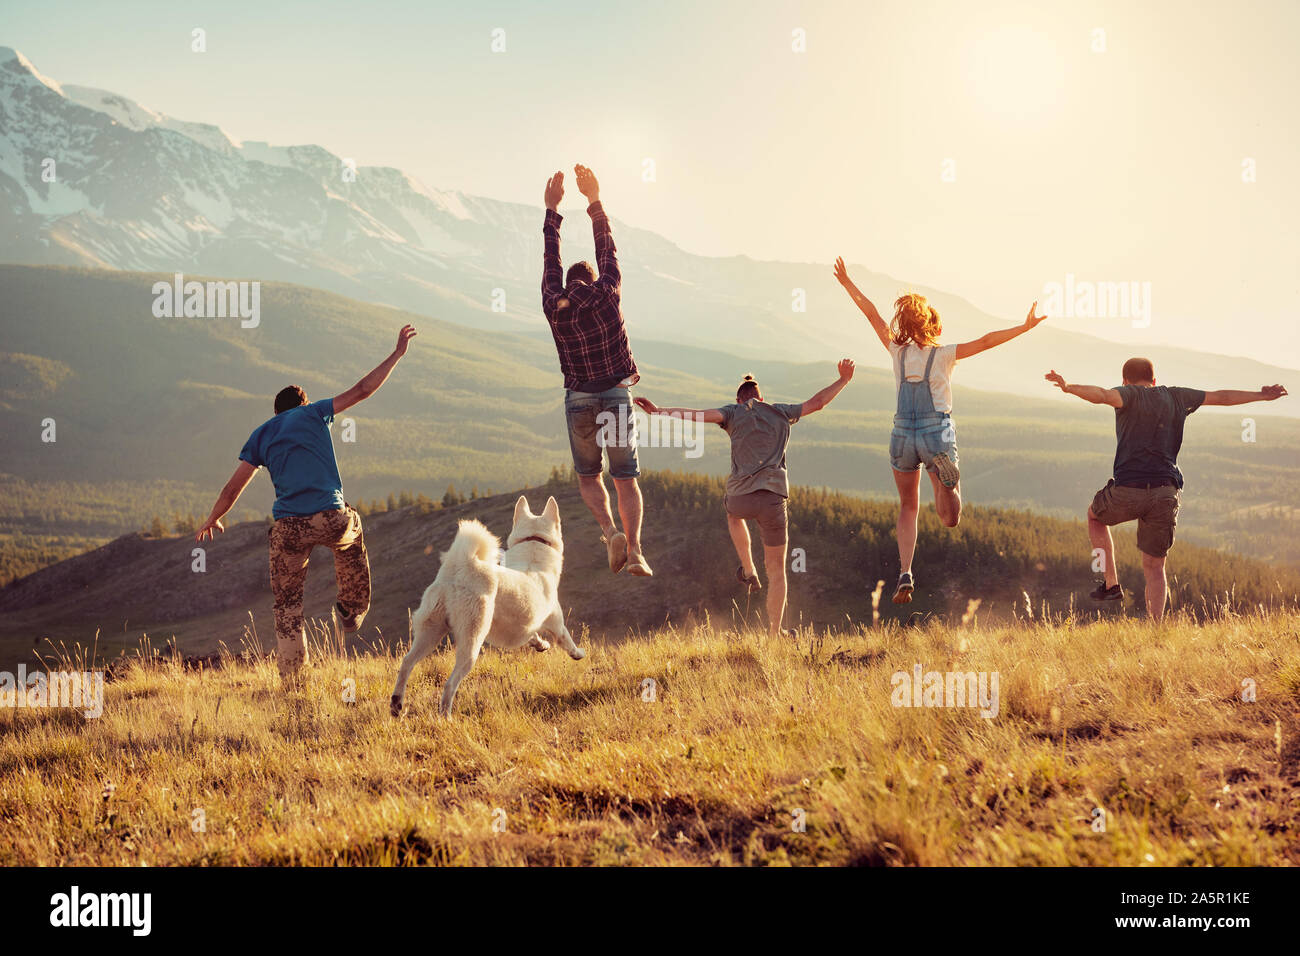 Groupe d'amis heureux s'amusent, court et saute dans la montagne au coucher du soleil Banque D'Images